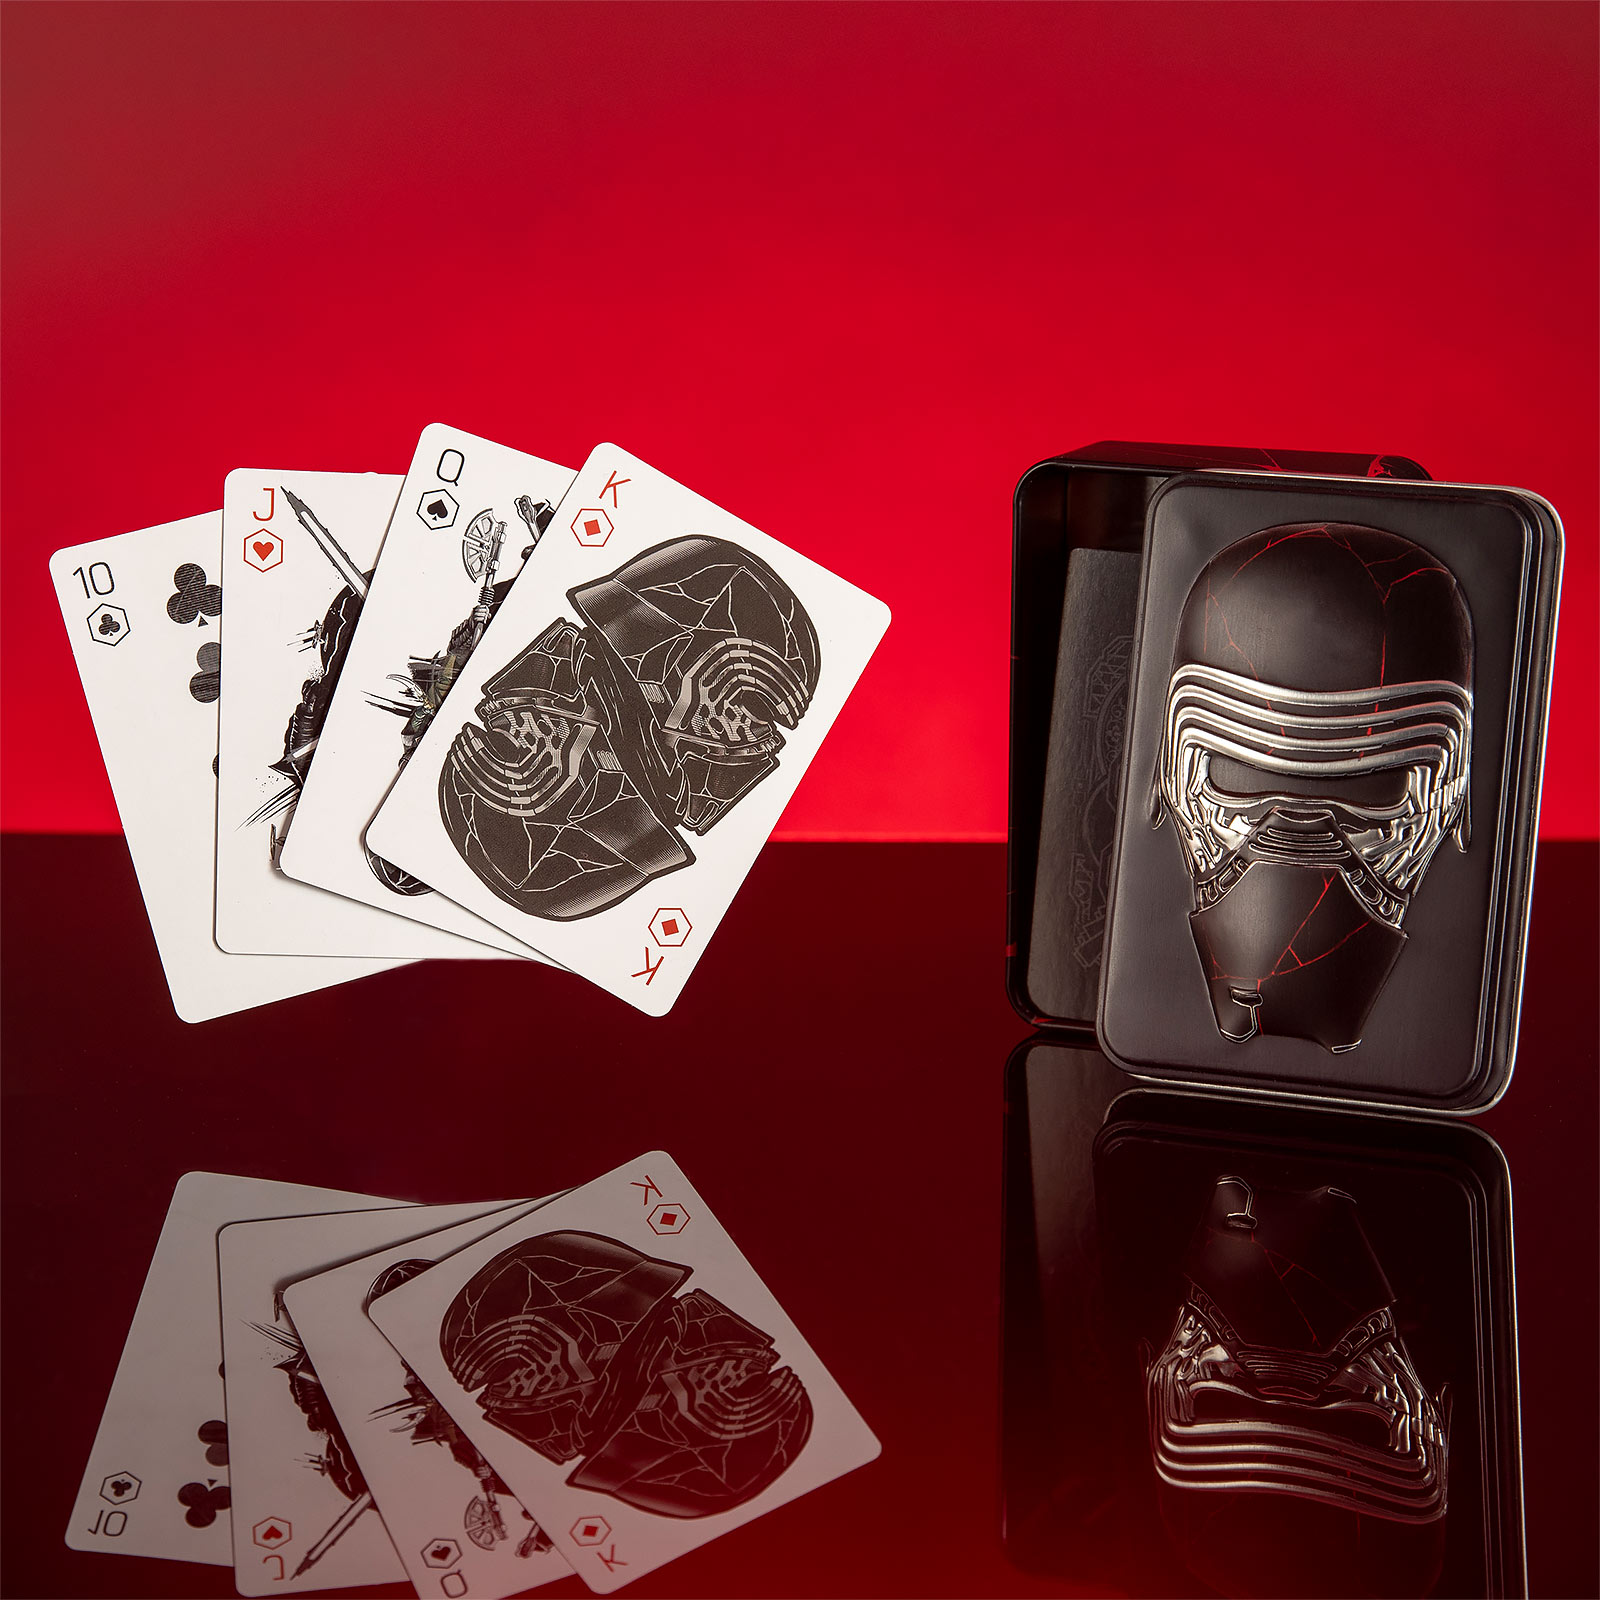 Star Wars - Kylo Ren Card Game in Metal Box